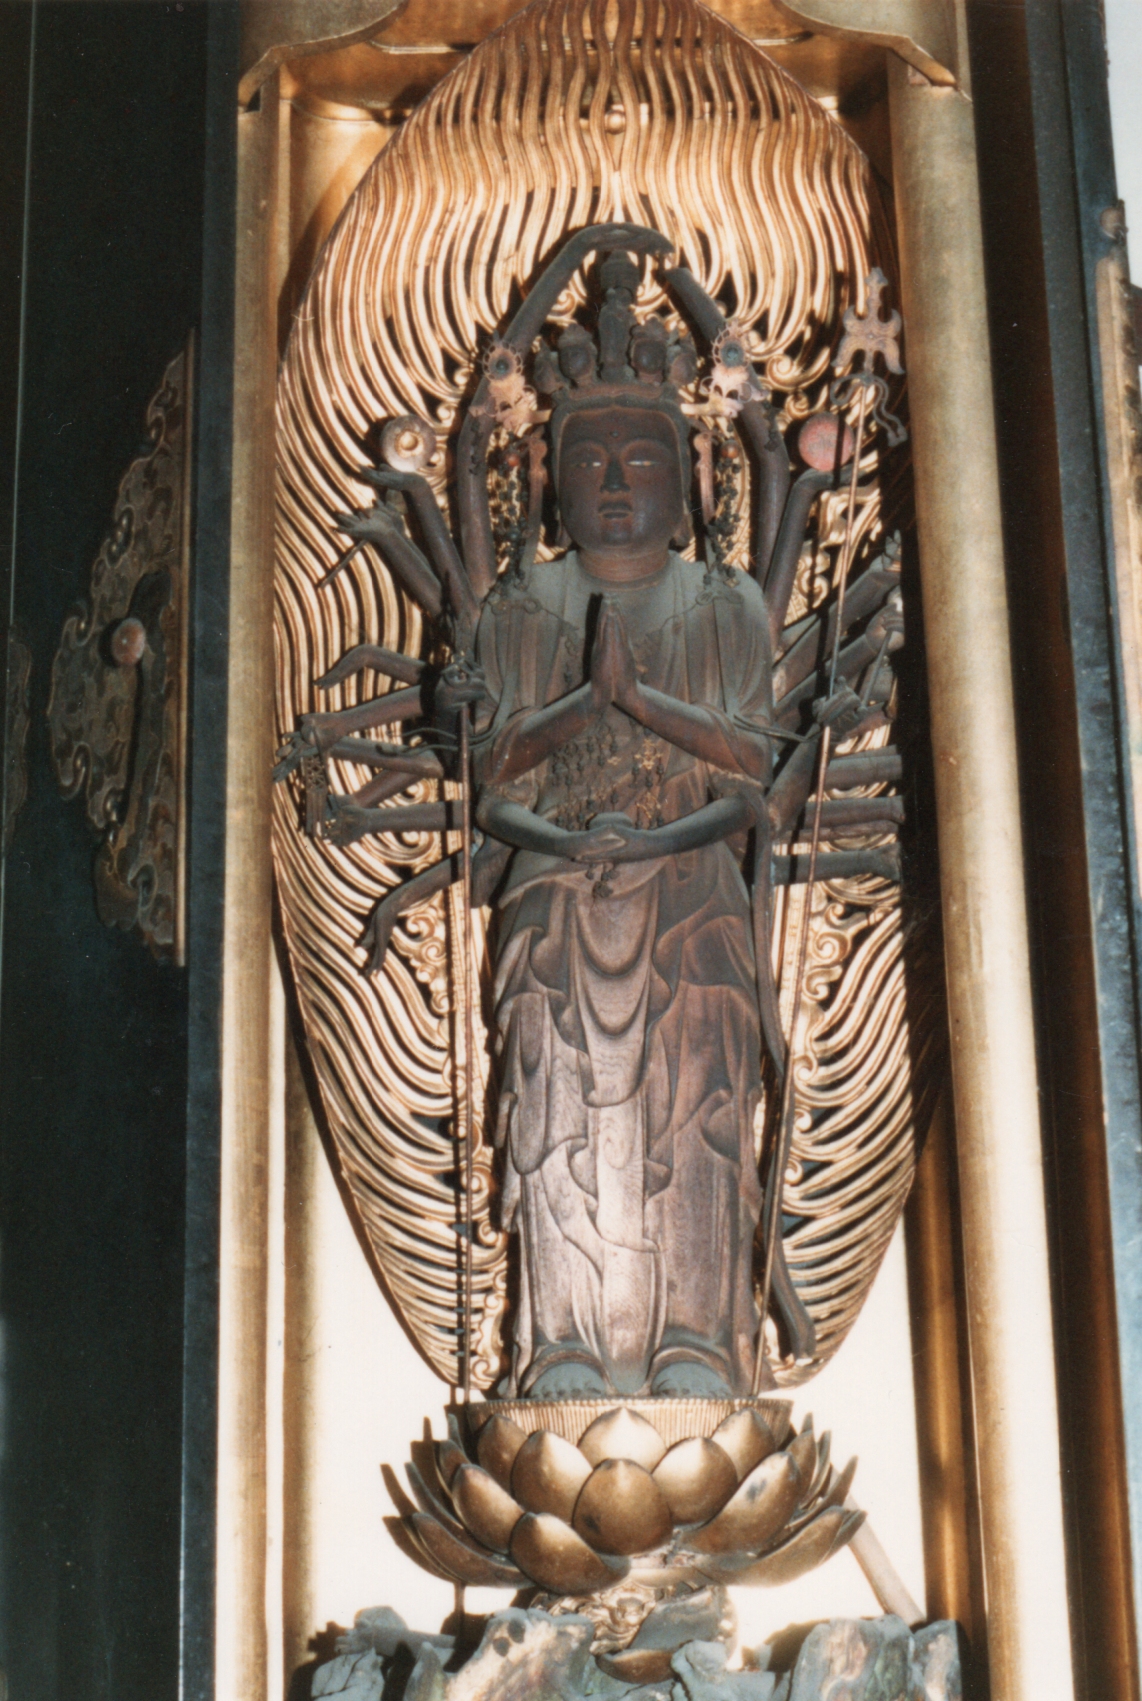 穴太山多井寺の千手観音像の写真